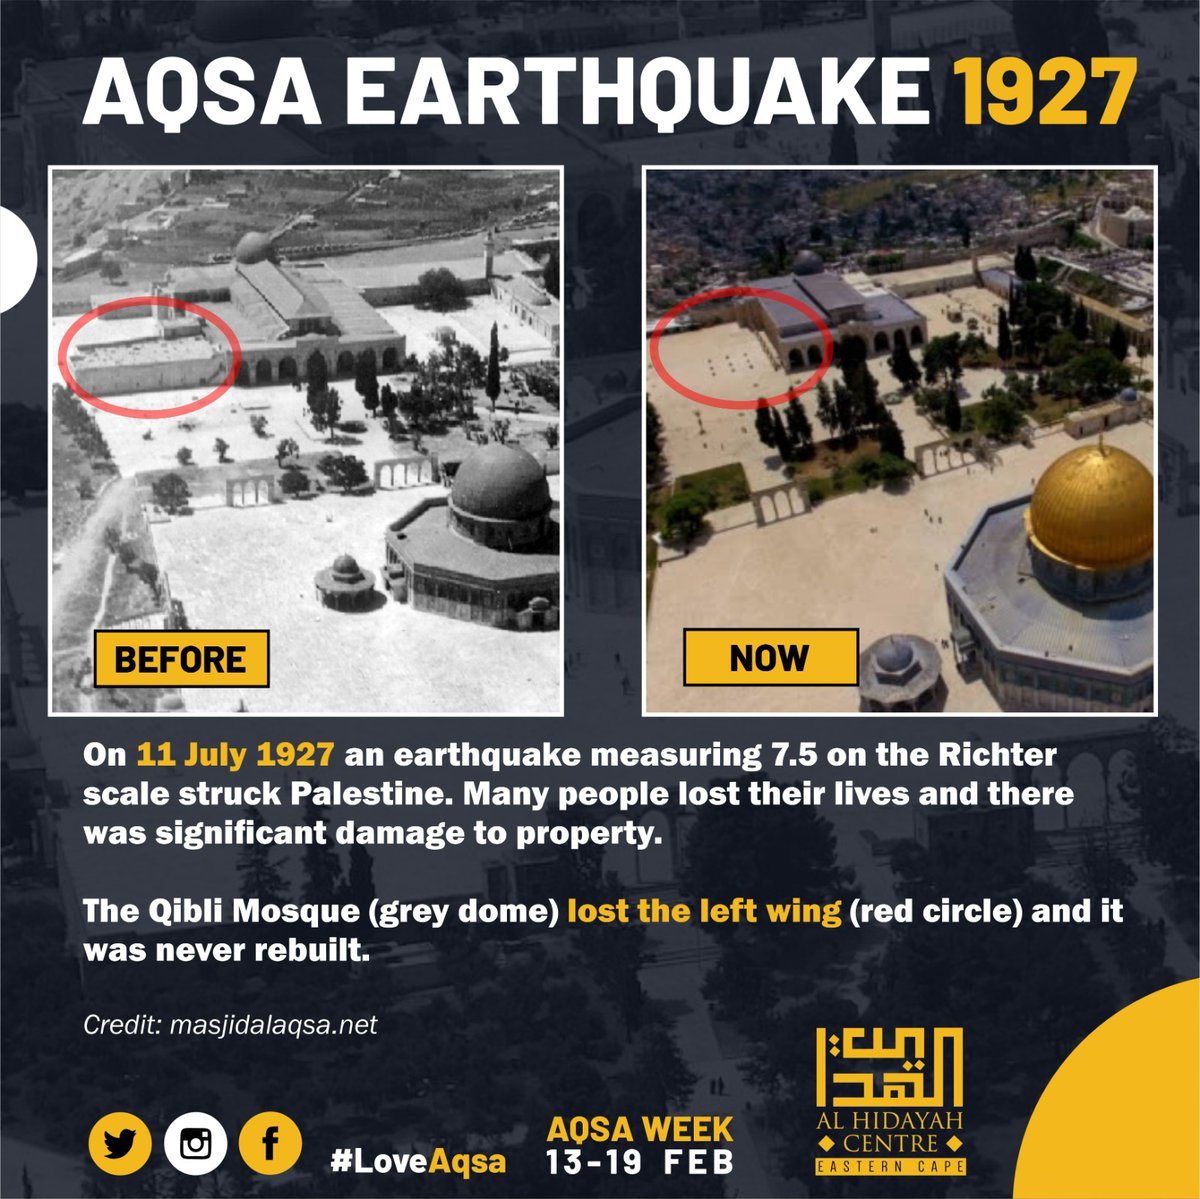 #Aqsa | Did you know
Aqsa #Earthquake 1927

Aqsa Week 13-19 Feb
#LoveAqsa